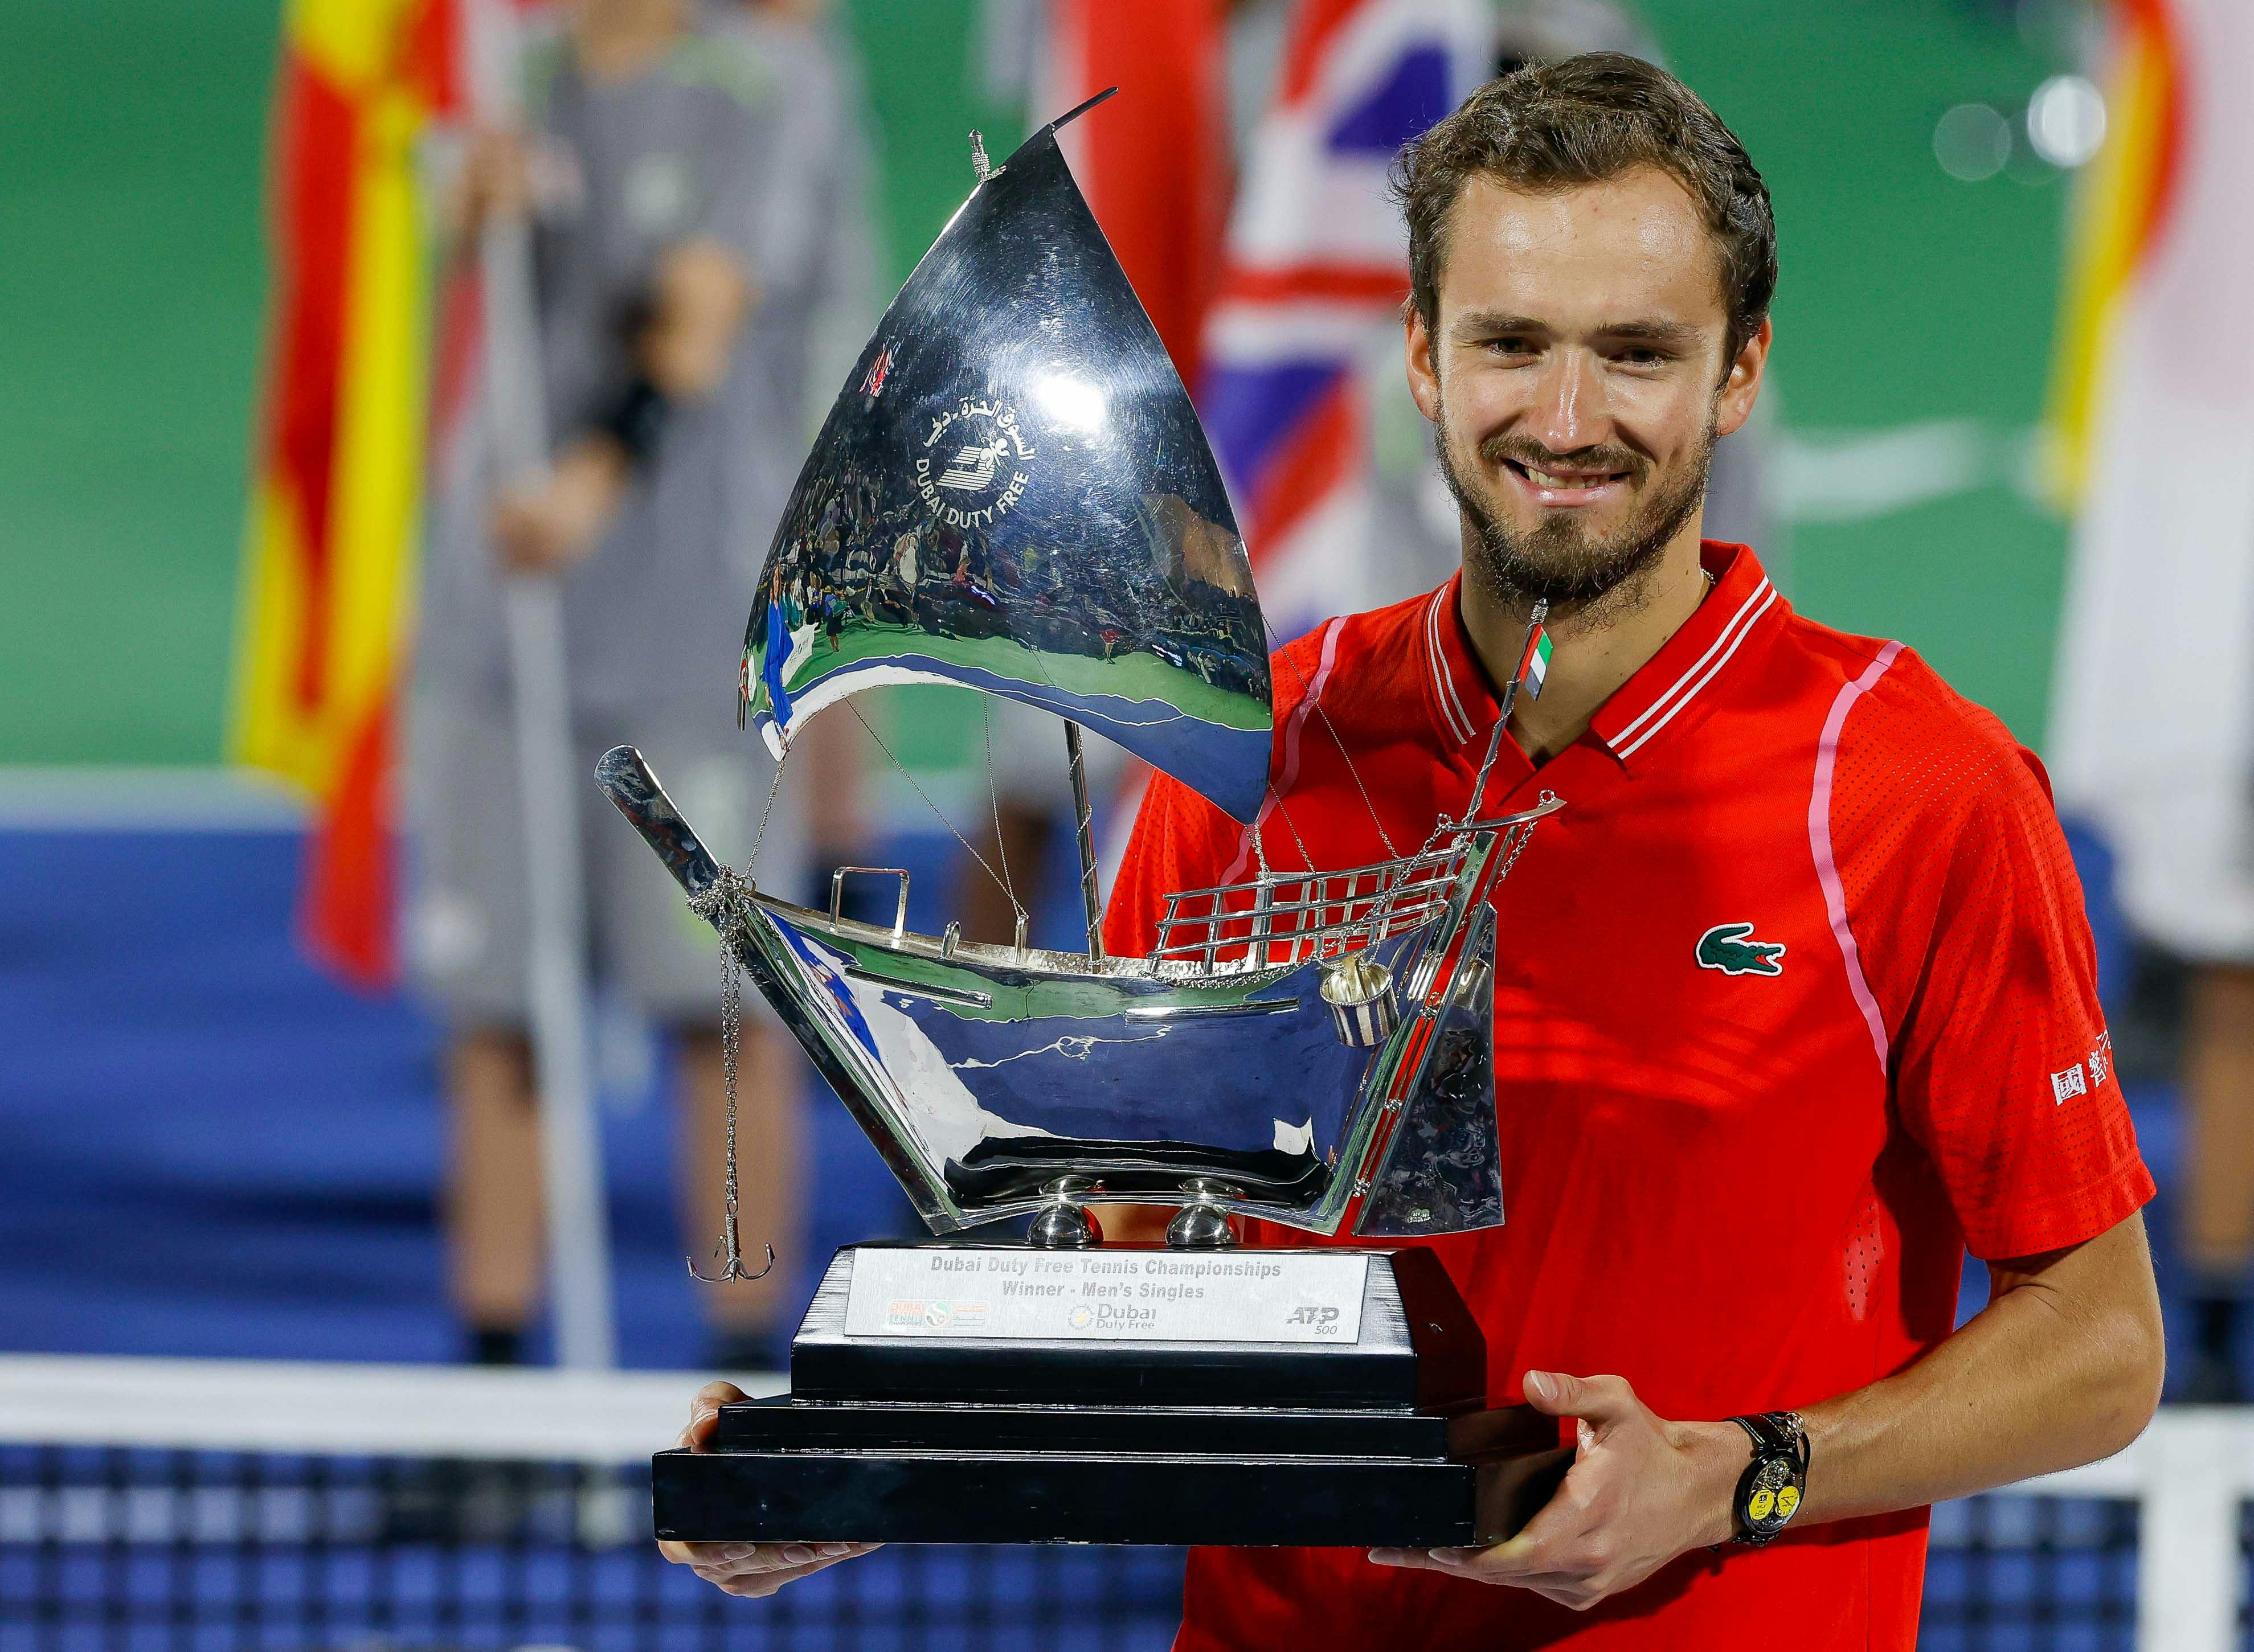 Medvedev ends Djokovic win streak to enter Dubai final